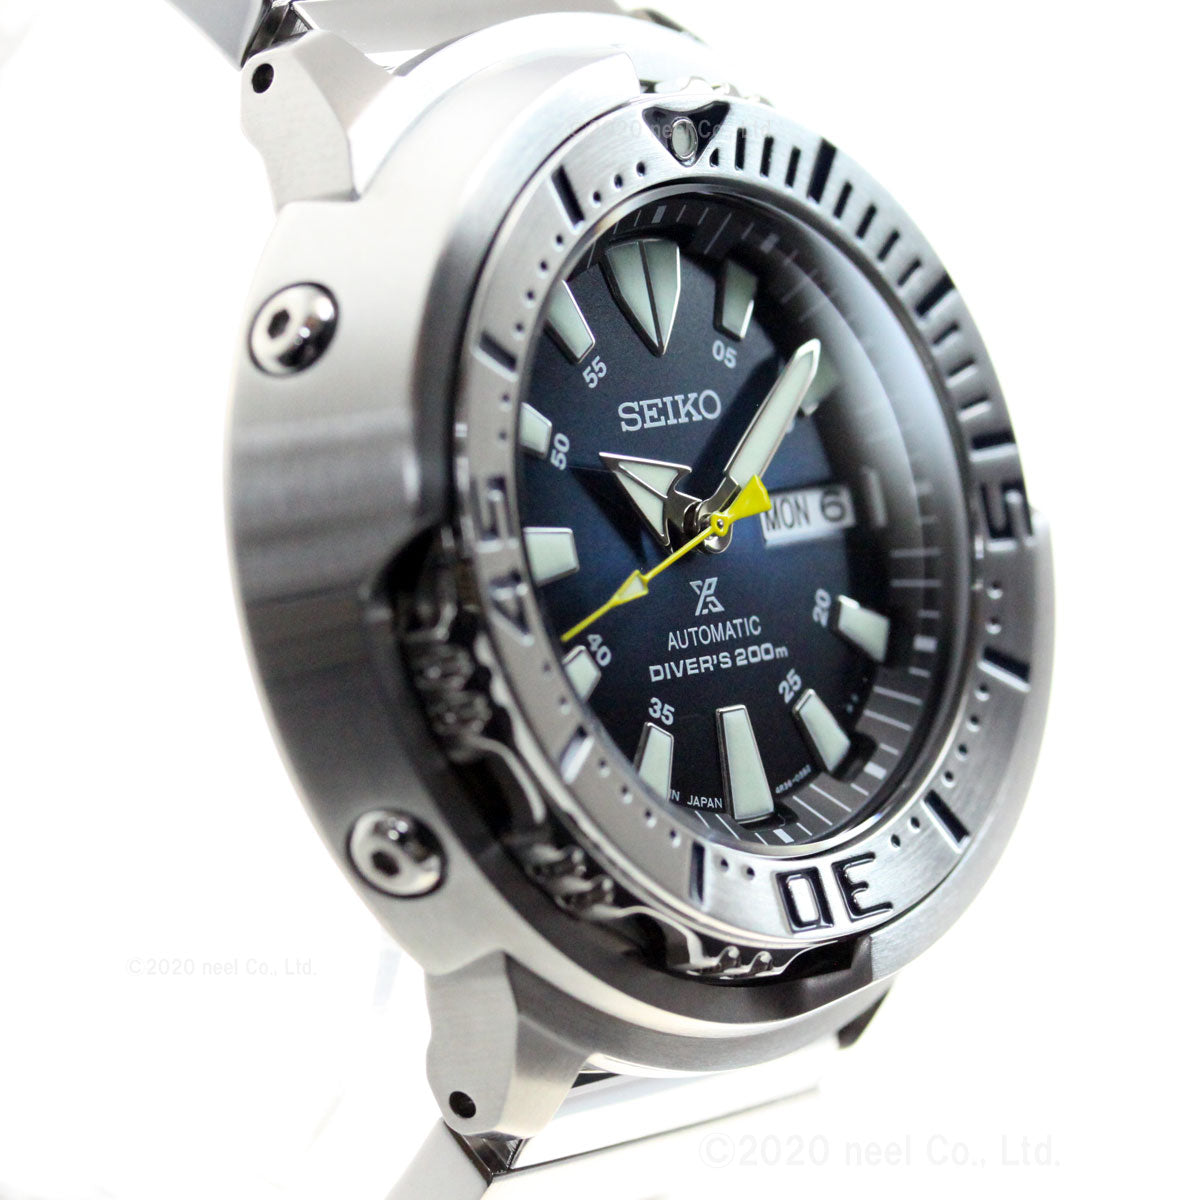 セイコー プロスペックス SEIKO PROSPEX ダイバースキューバ メカニカル 自動巻き ネット流通限定モデル 腕時計 メンズ ベビーツナ  Baby Tuna SBDY055